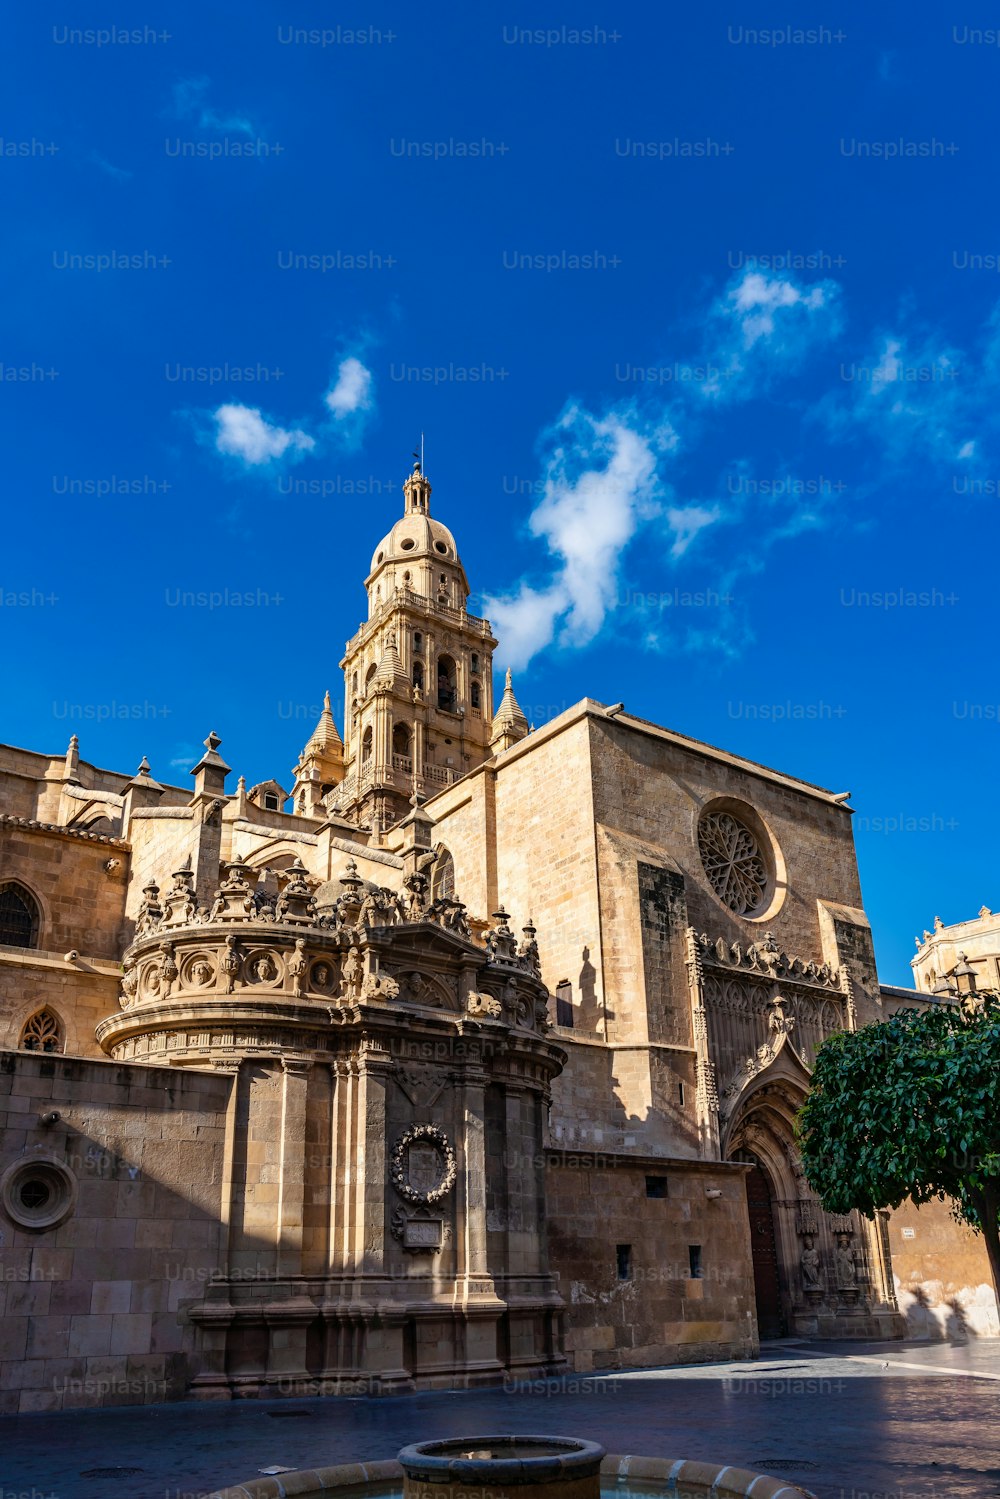 Iglesia Catedral de Santa María, La Santa Iglesia Catedral de Santa María en Murcia, España. Una mezcla de estilo gótico y barroco.